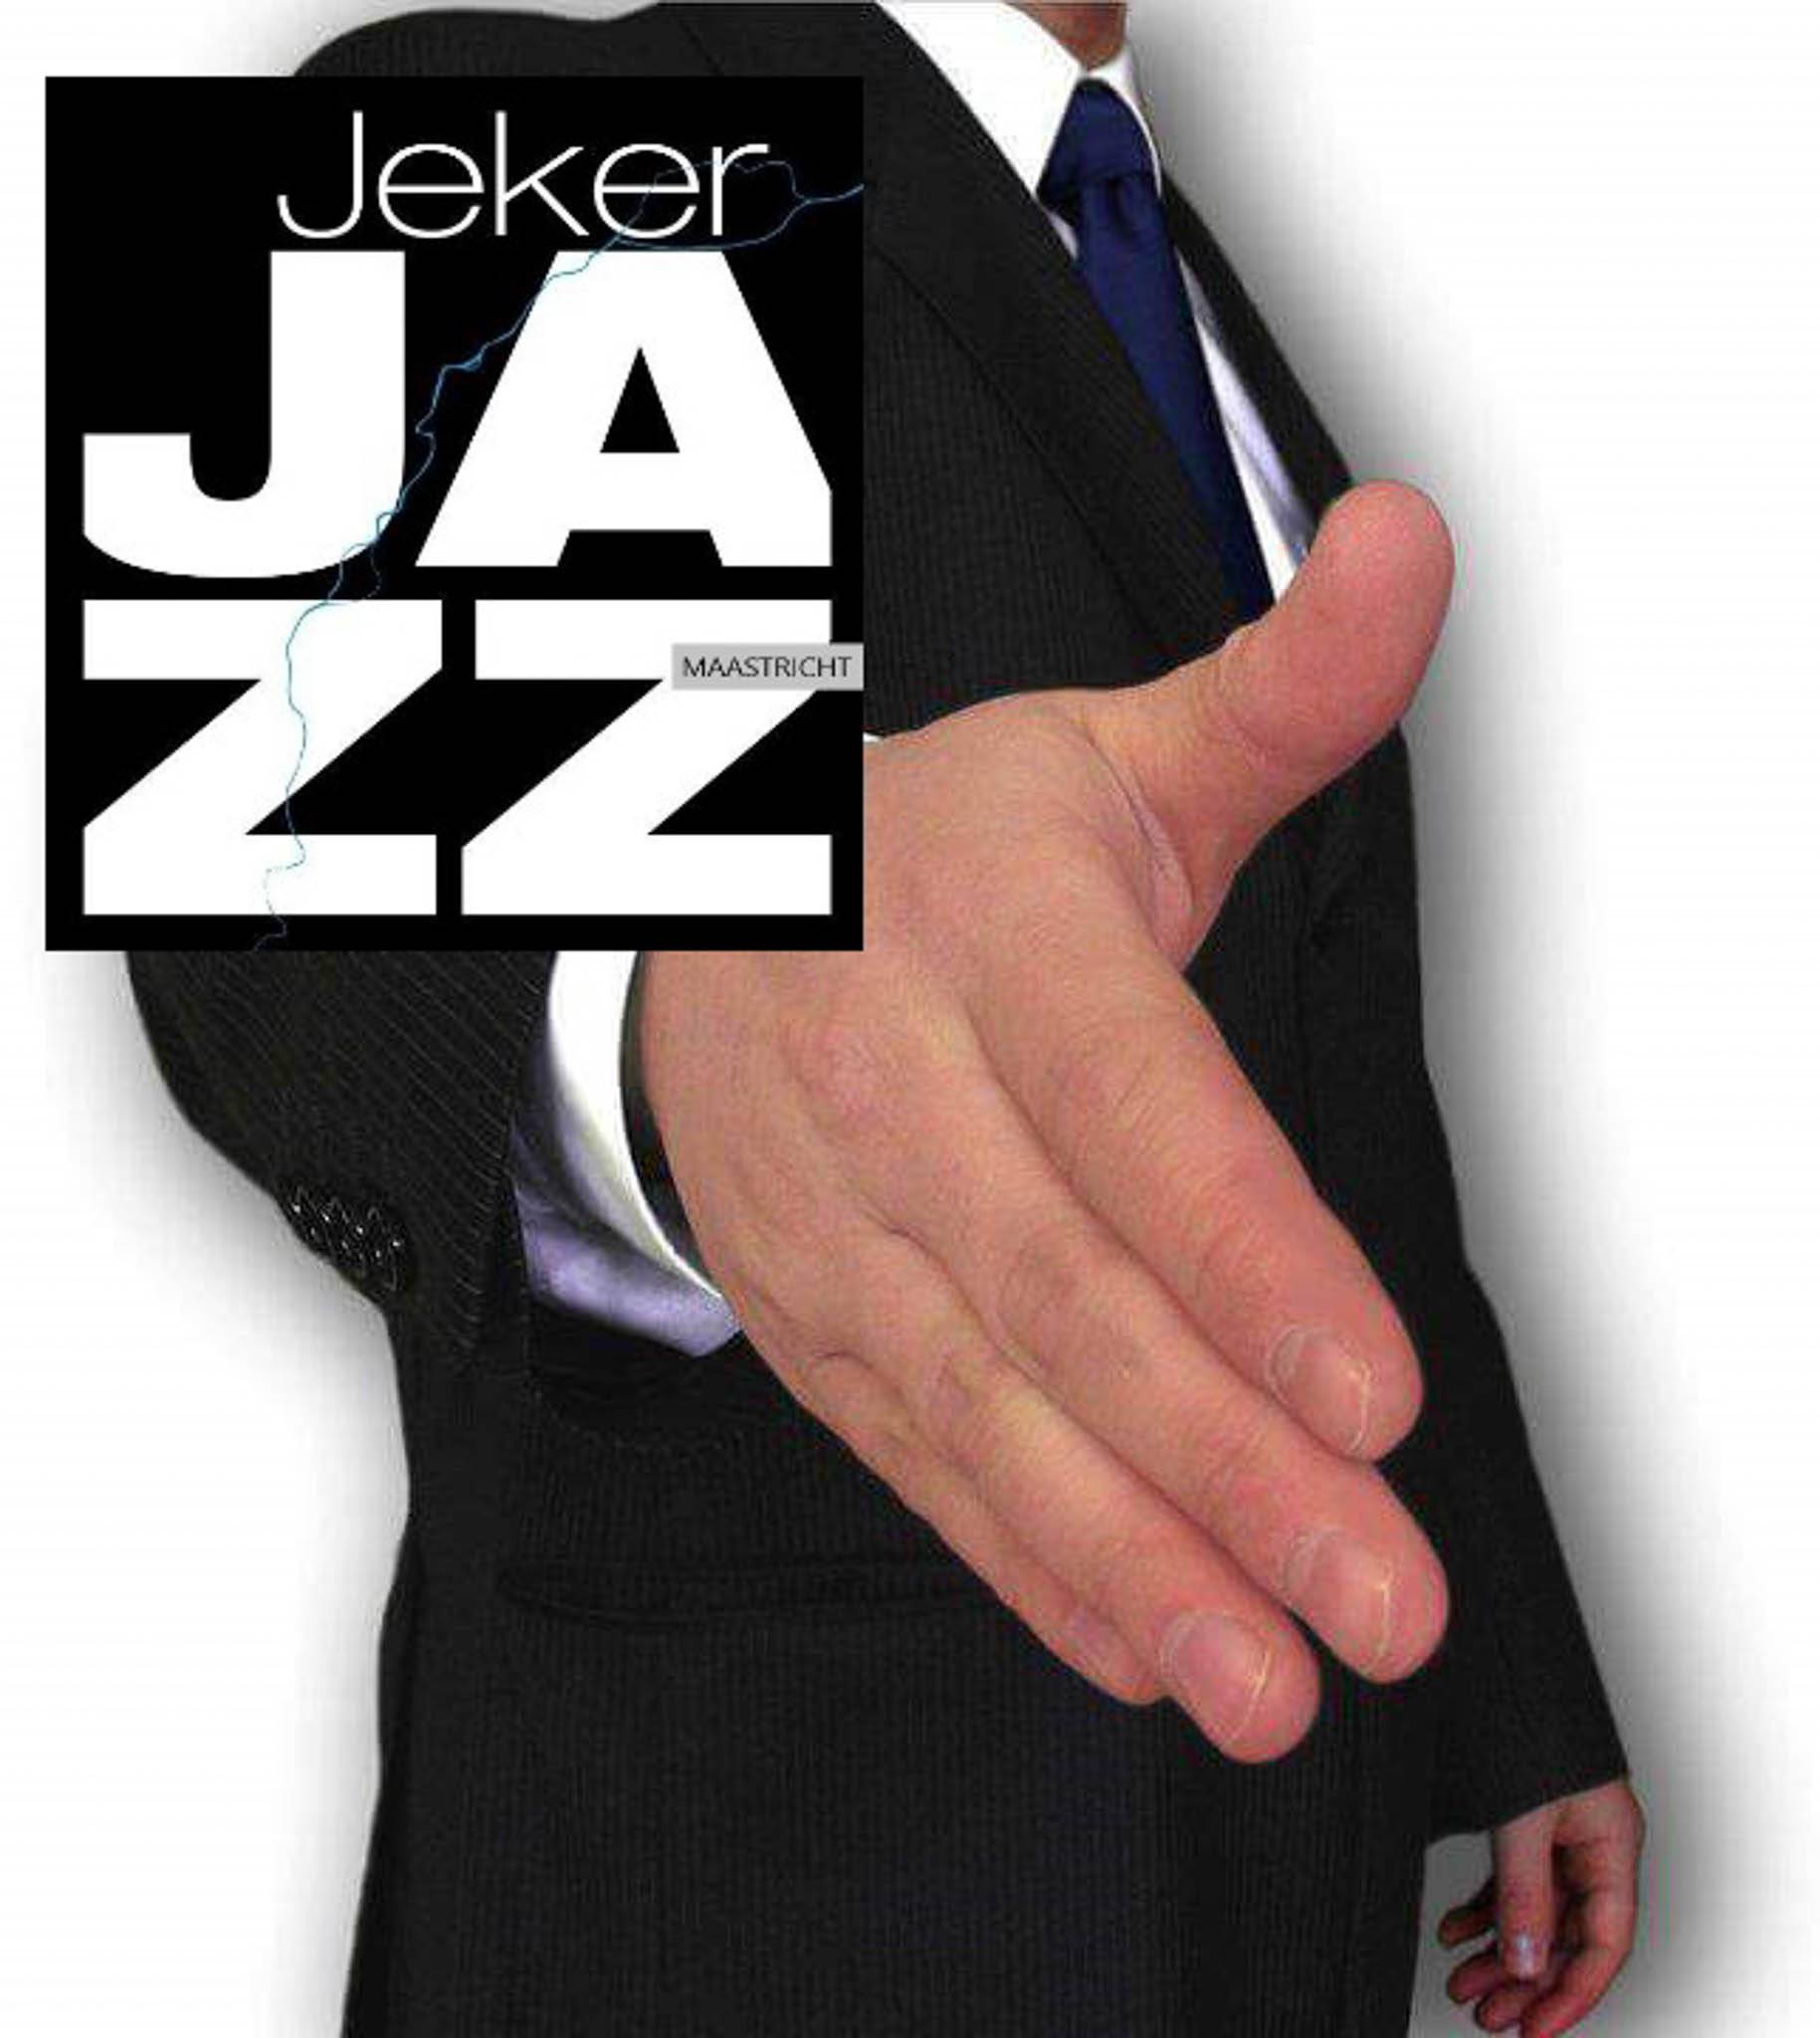 JekerJazz meets you